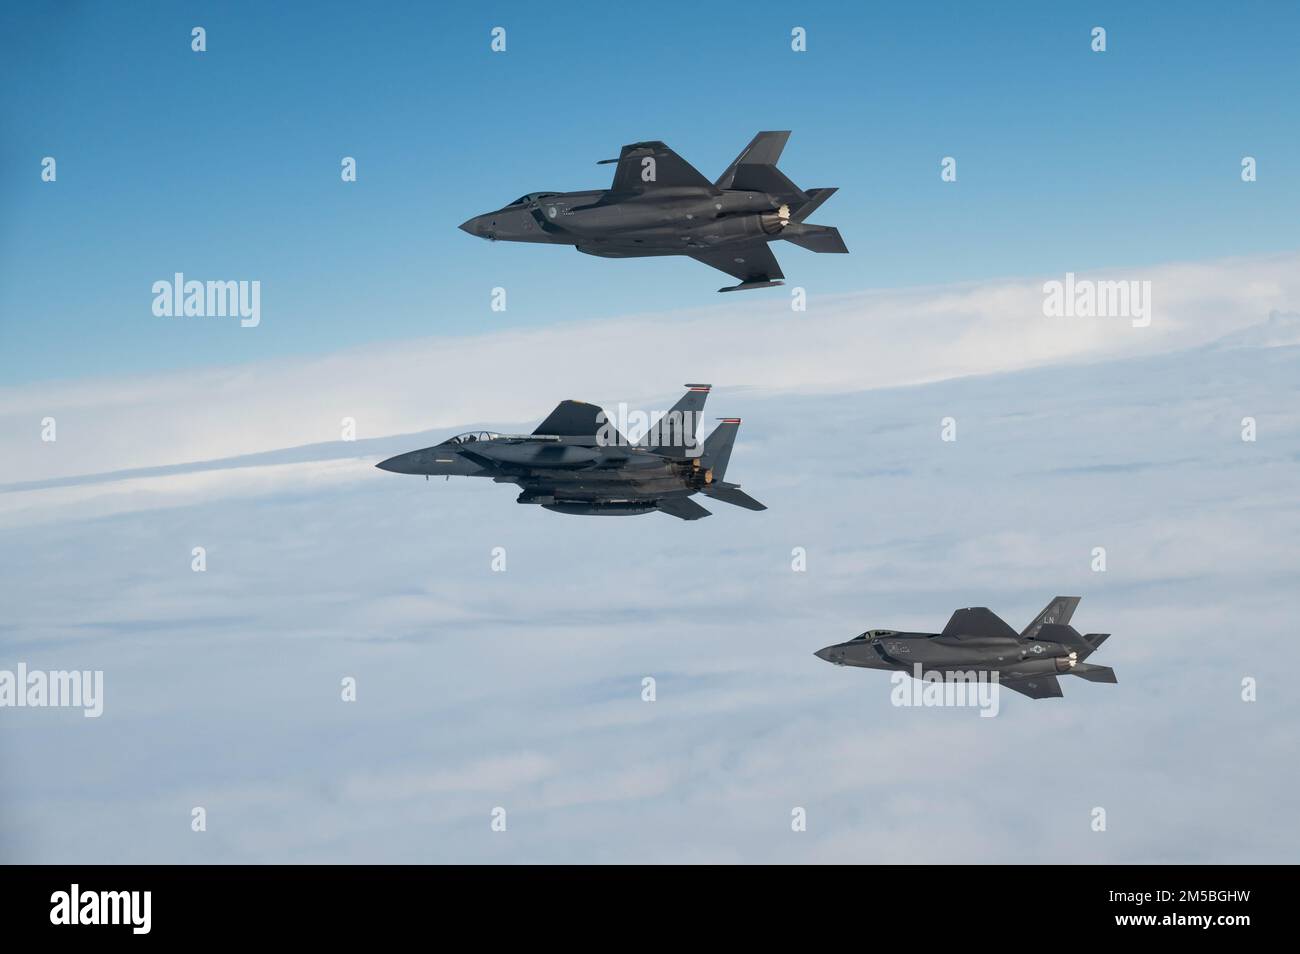 EIN US-AMERIKANISCHER Air Force F-15E Strike Eagle leitet eine drei-Schiff-Formation mit US- und niederländischen F-35A Lightning II-Flugzeugen während einer bilateralen Air-to-Air-Übung über den Niederlanden am 22. Februar 2022. Die Ausbildung sollte die Interoperabilität verbessern und es den Vereinten Kräften ermöglichen, kohärent und wirksam zusammenzuarbeiten, um militärische Ziele zu erreichen. Stockfoto